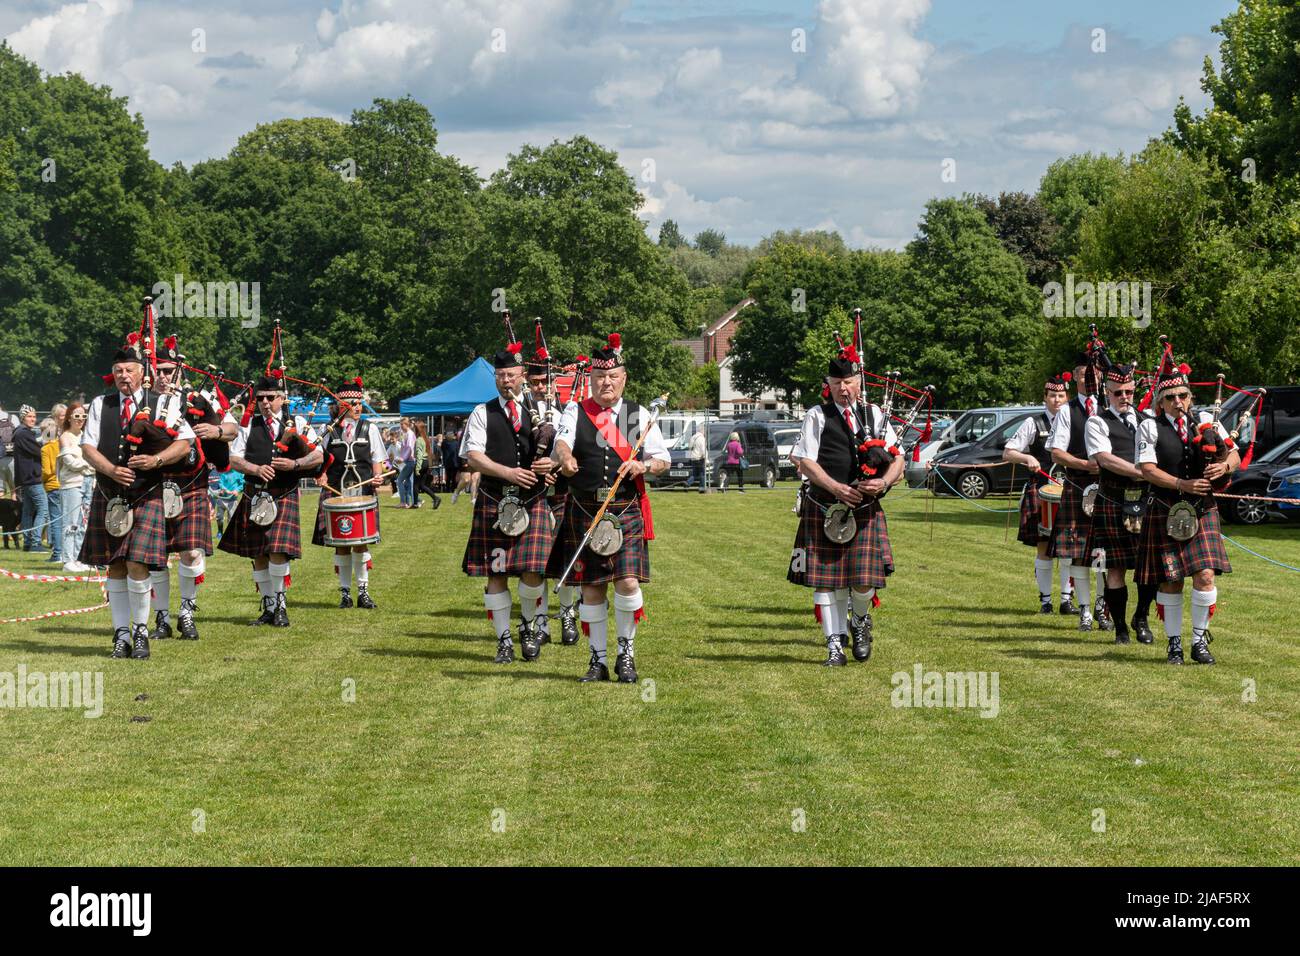 Lecture Scottish Pipe Band en train de marcher dans l'arène et de divertir les gens lors d'un événement à Farnborough, Hampshire, Angleterre, Royaume-Uni Banque D'Images